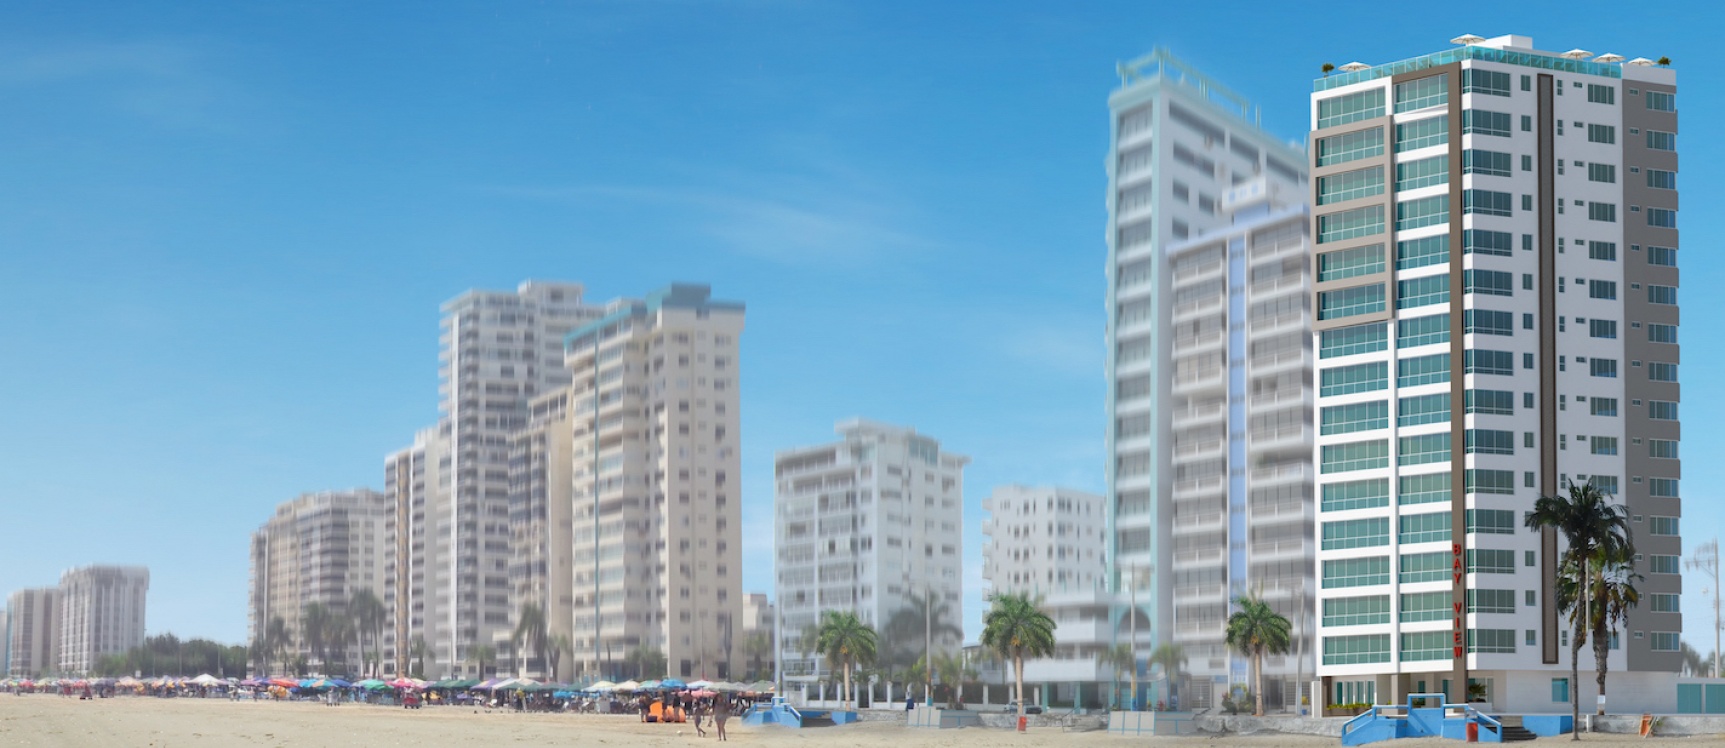 GeoBienes - Departamento en venta en Salinas de 1 dormitorio frente a la playa de Chipipe - Plusvalia Guayaquil Casas de venta y alquiler Inmobiliaria Ecuador